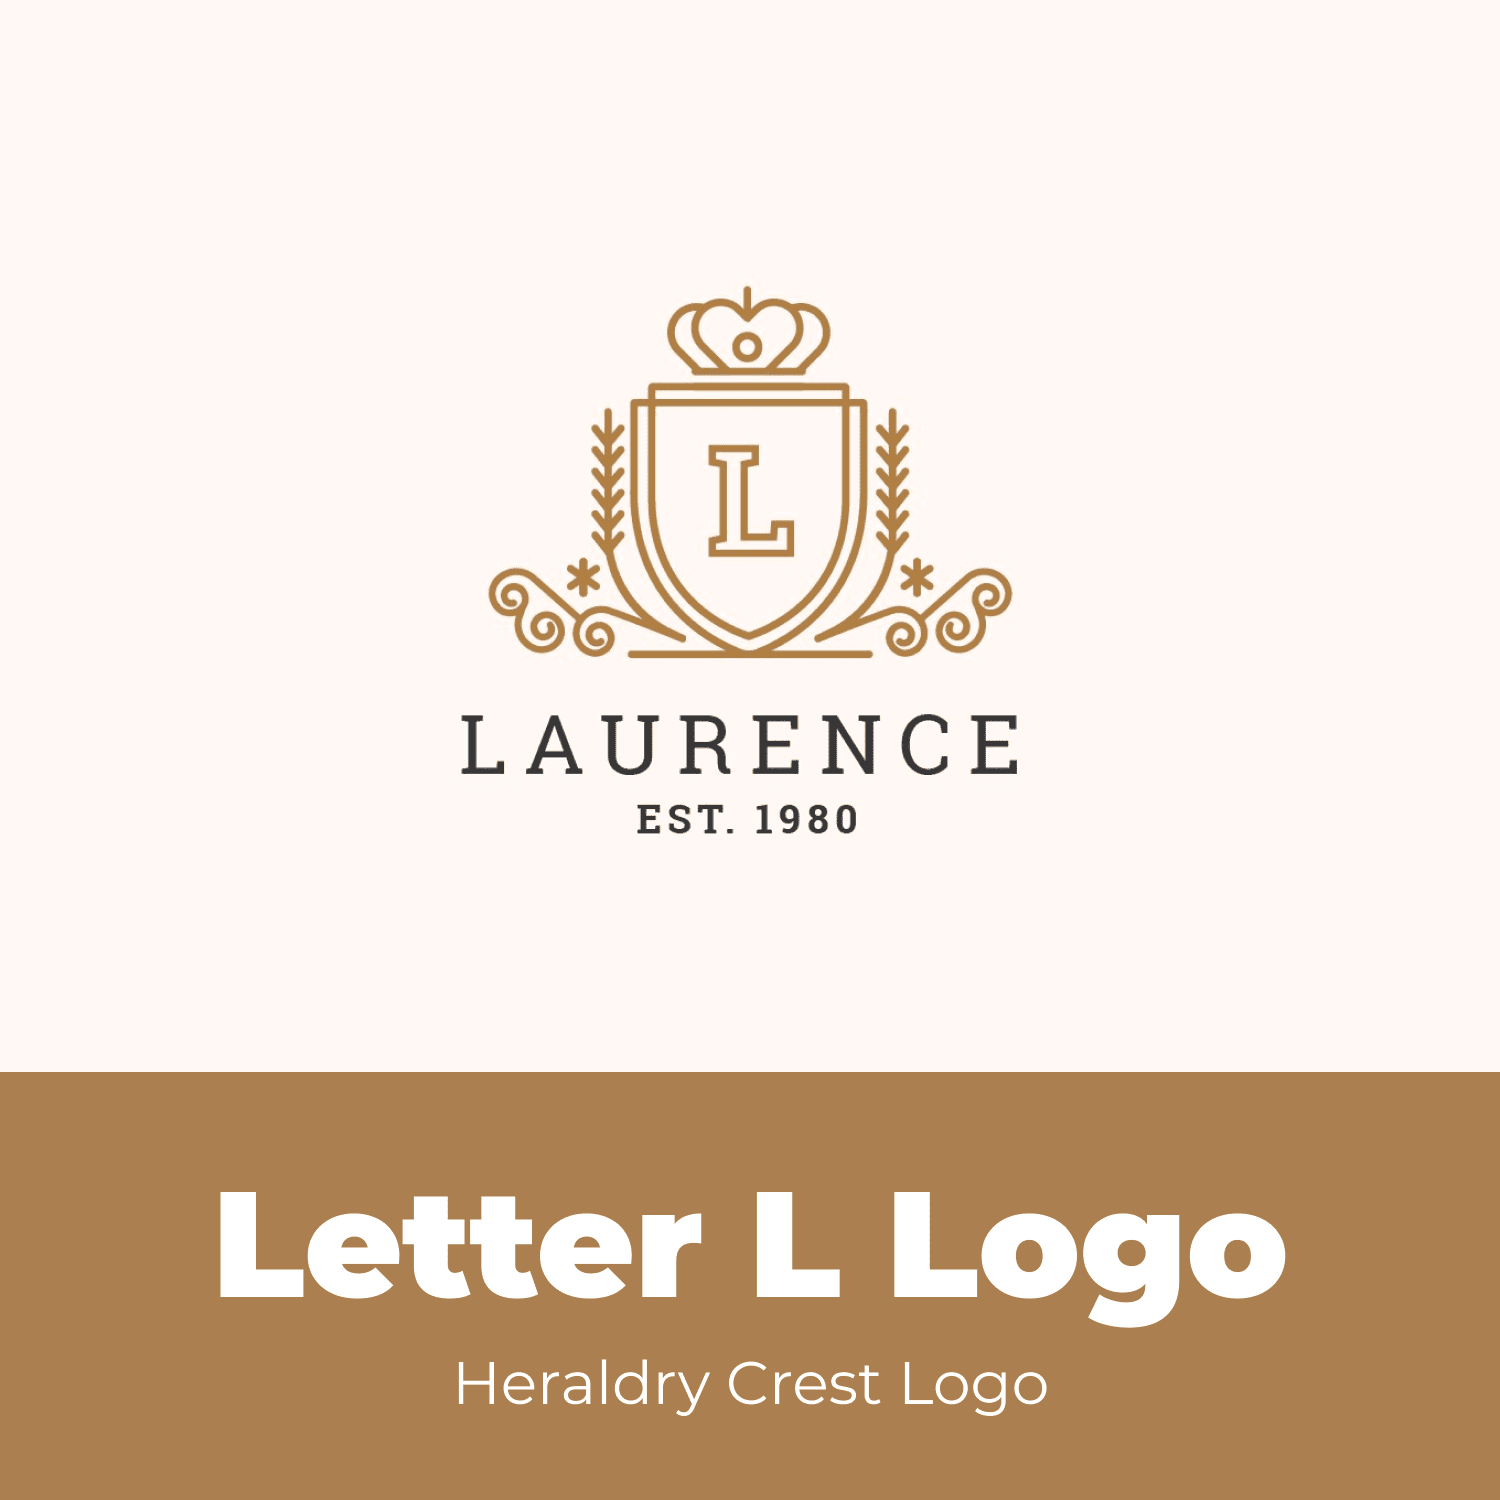 Letter L Logo - Heraldry Crest Logo.